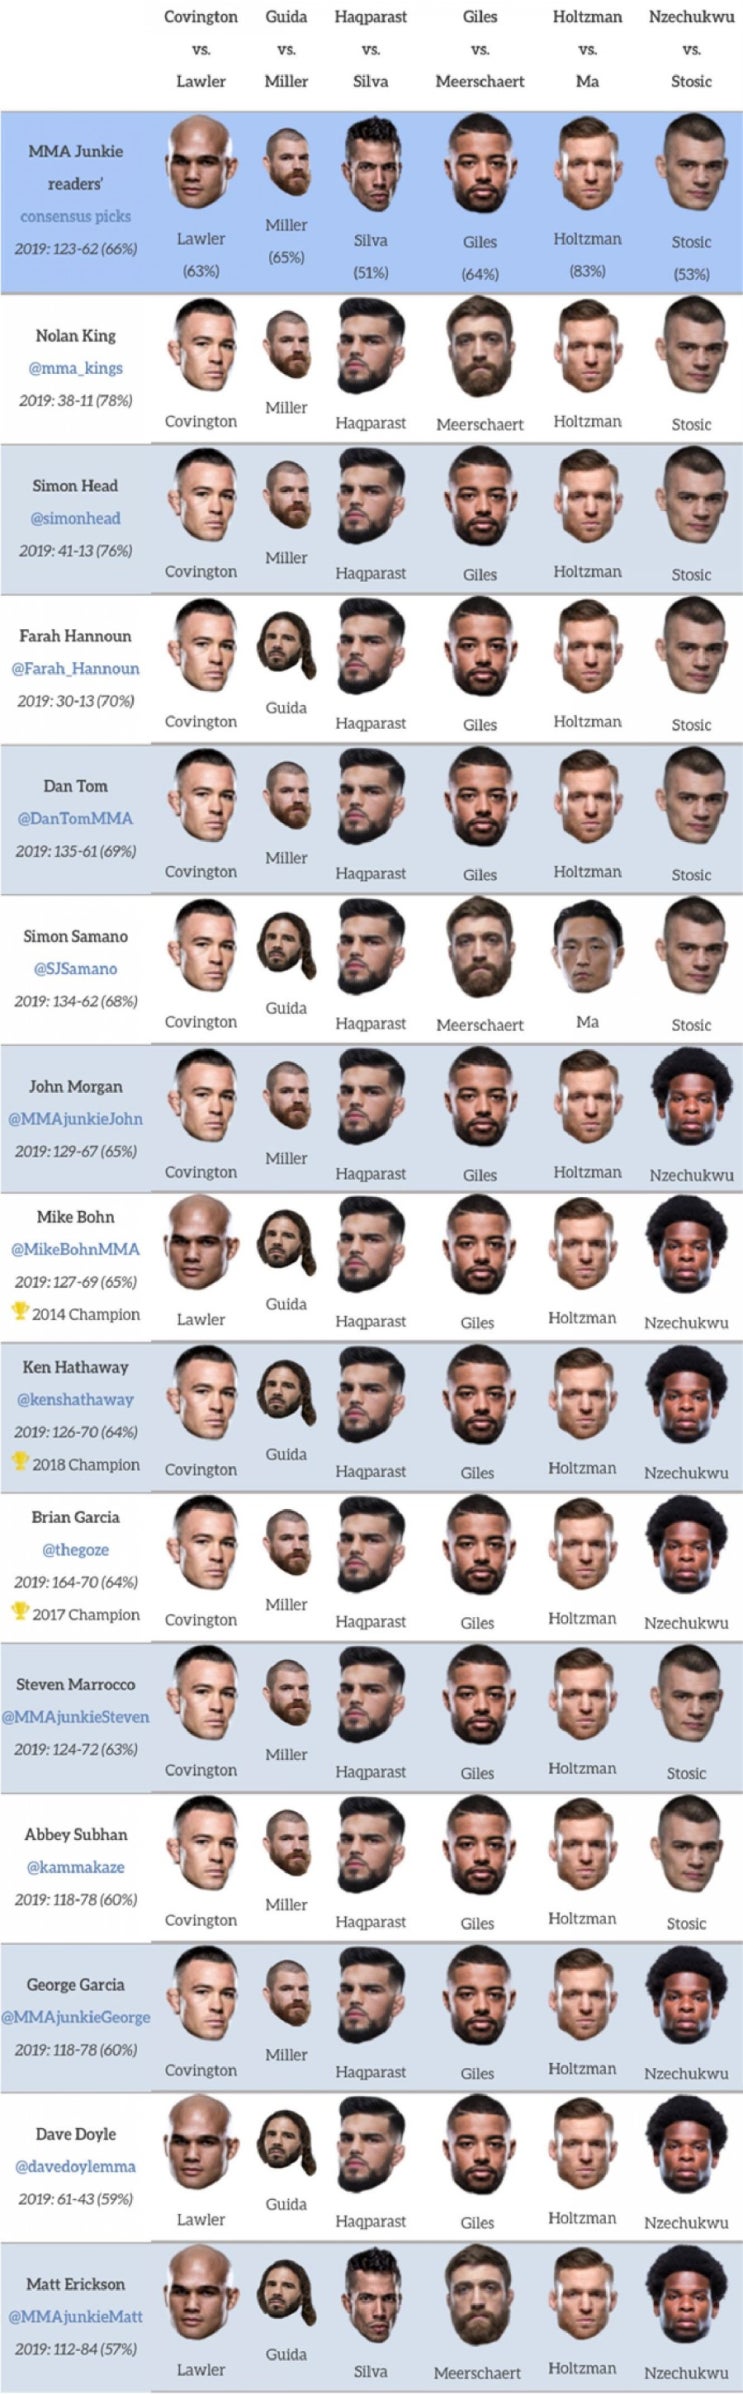 UFC on ESPN 5 : 코빙턴 vs 라울러 미디어 예상 및 배당률